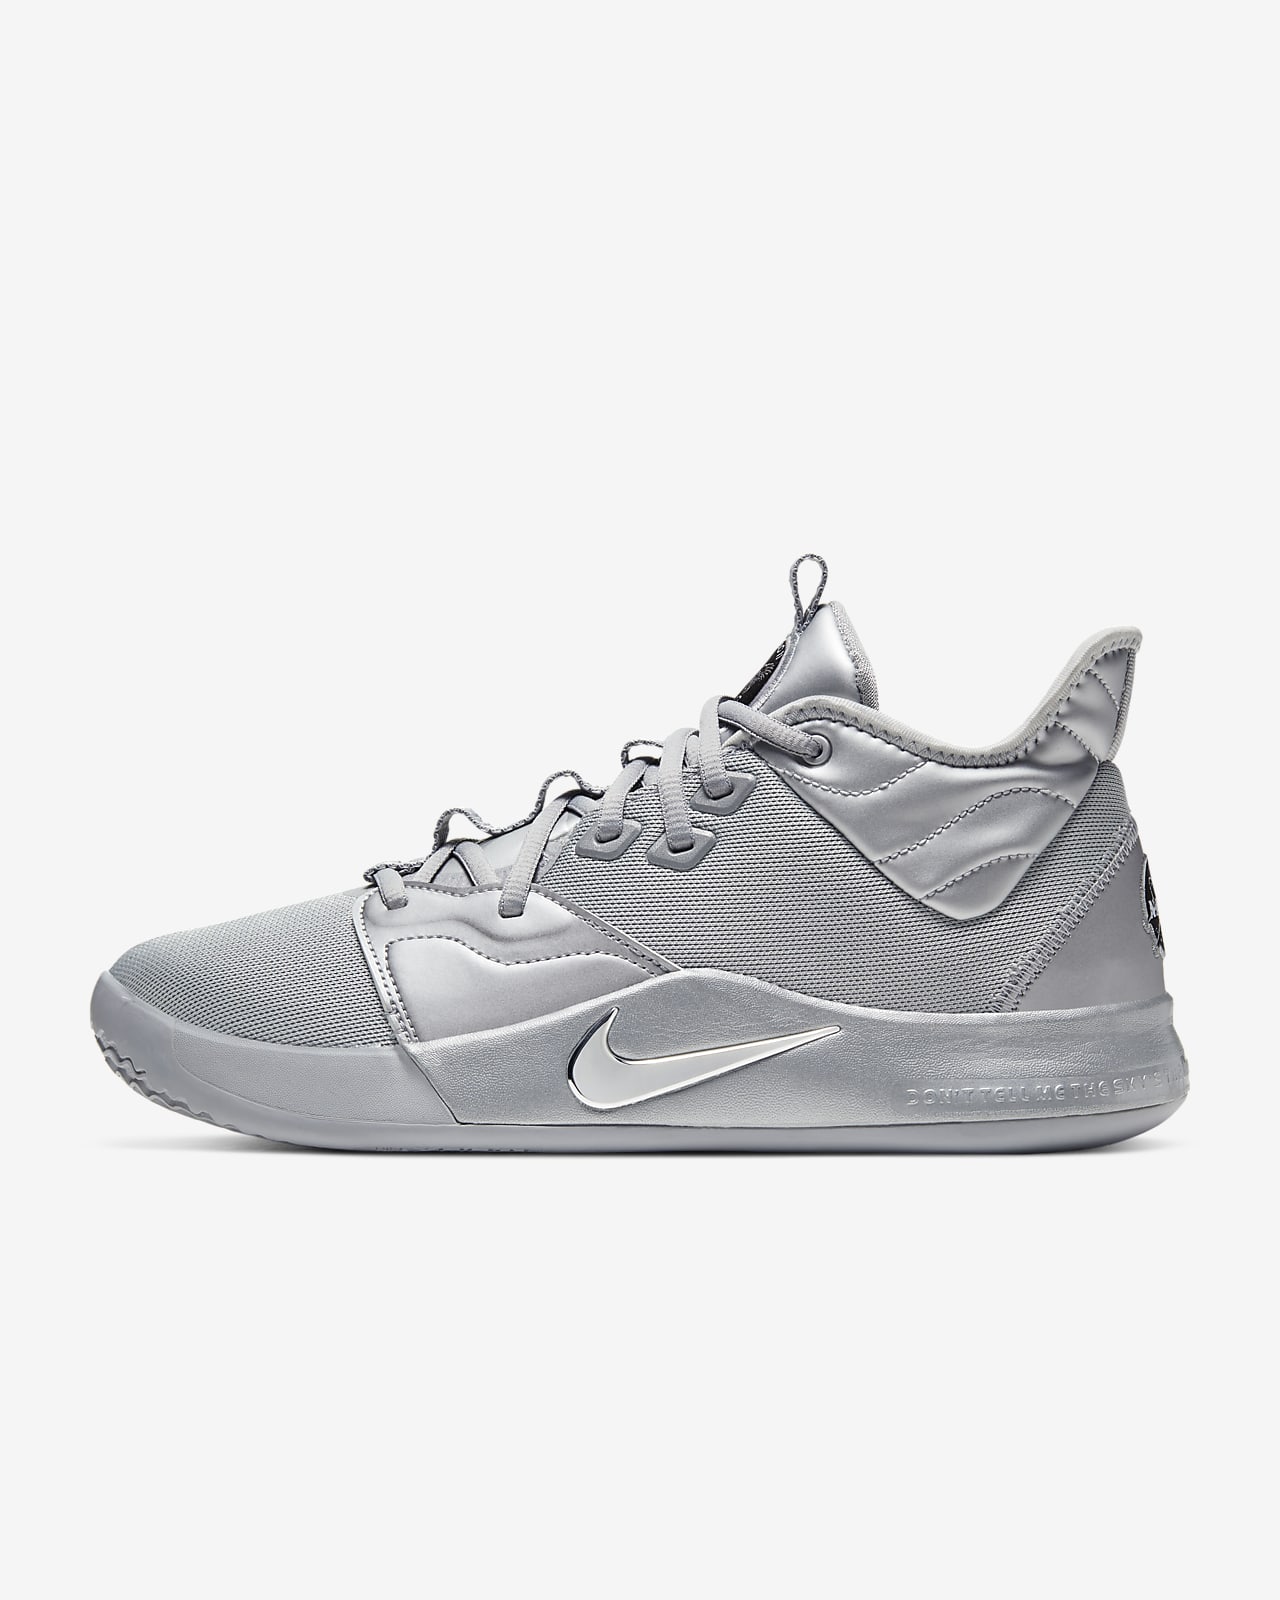 PG 3 NASA EP Basketball Shoe. Nike PH